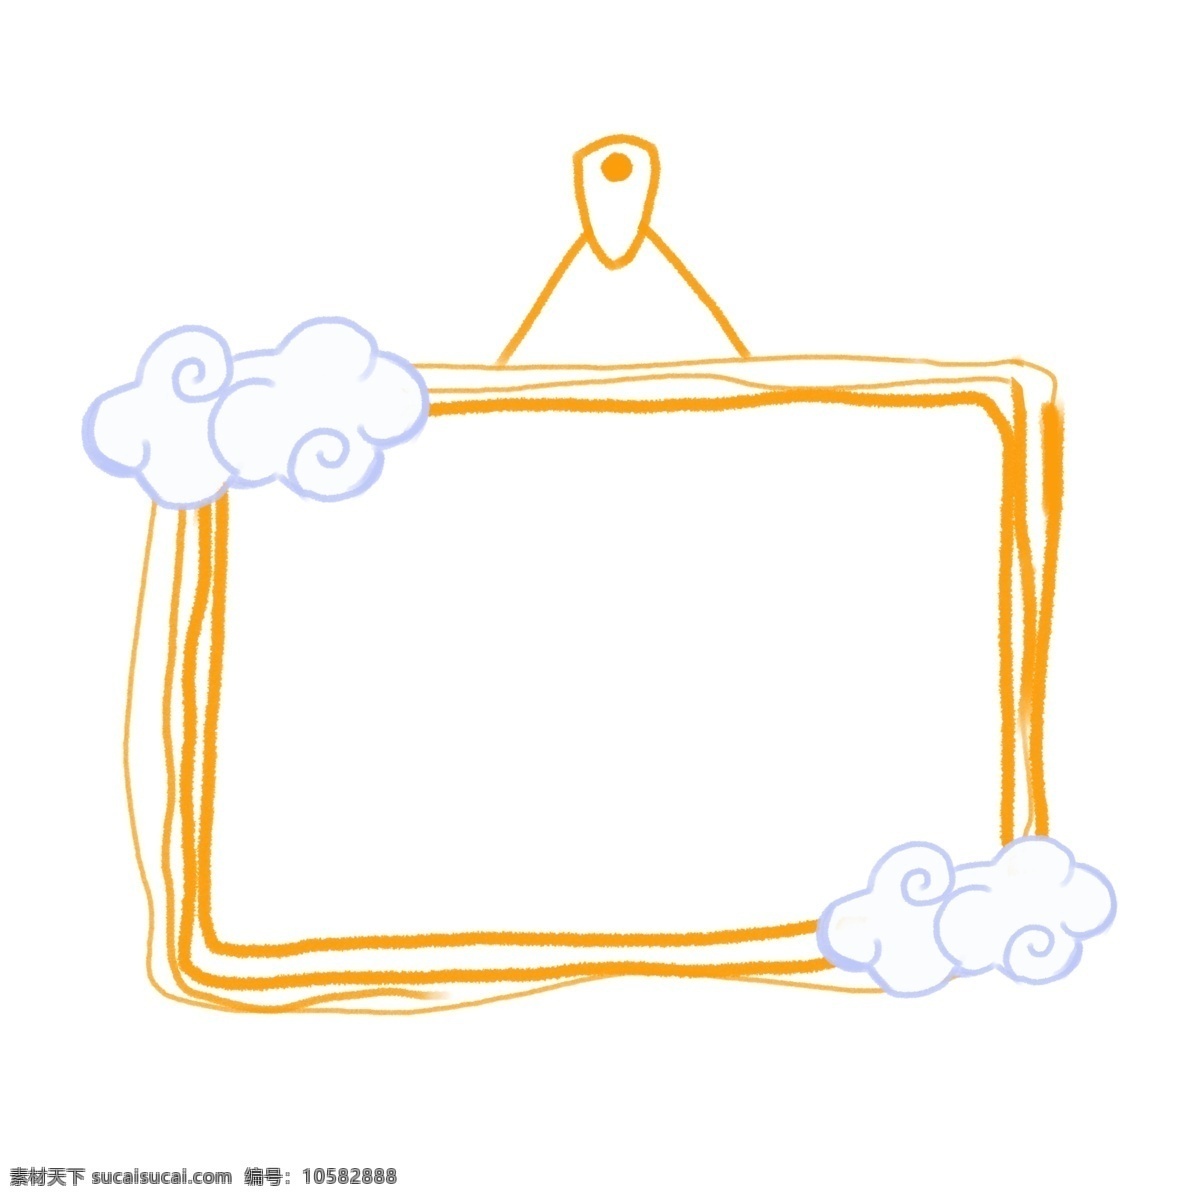 手绘 云朵 相框 设计素材 边框 花环 手绘图 白云 可爱相框 可爱边框 黄色对话框